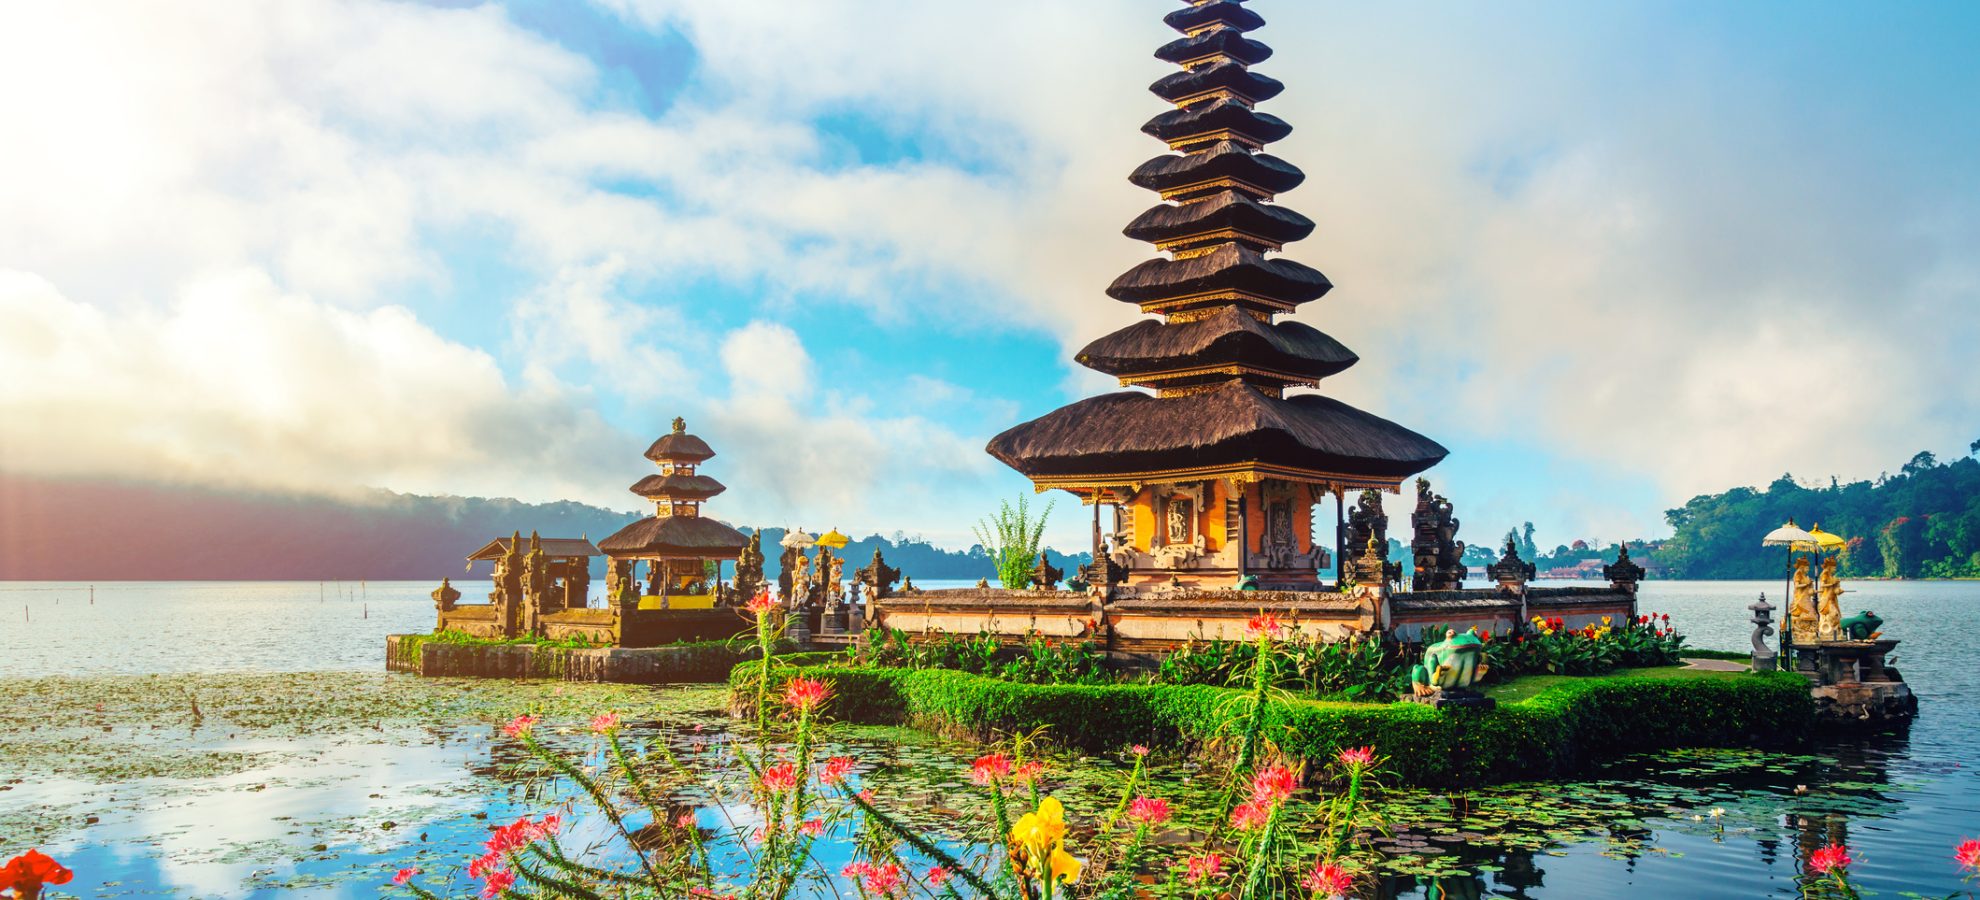 Pura Ulun Danu Temple on lake Brataan, Bali